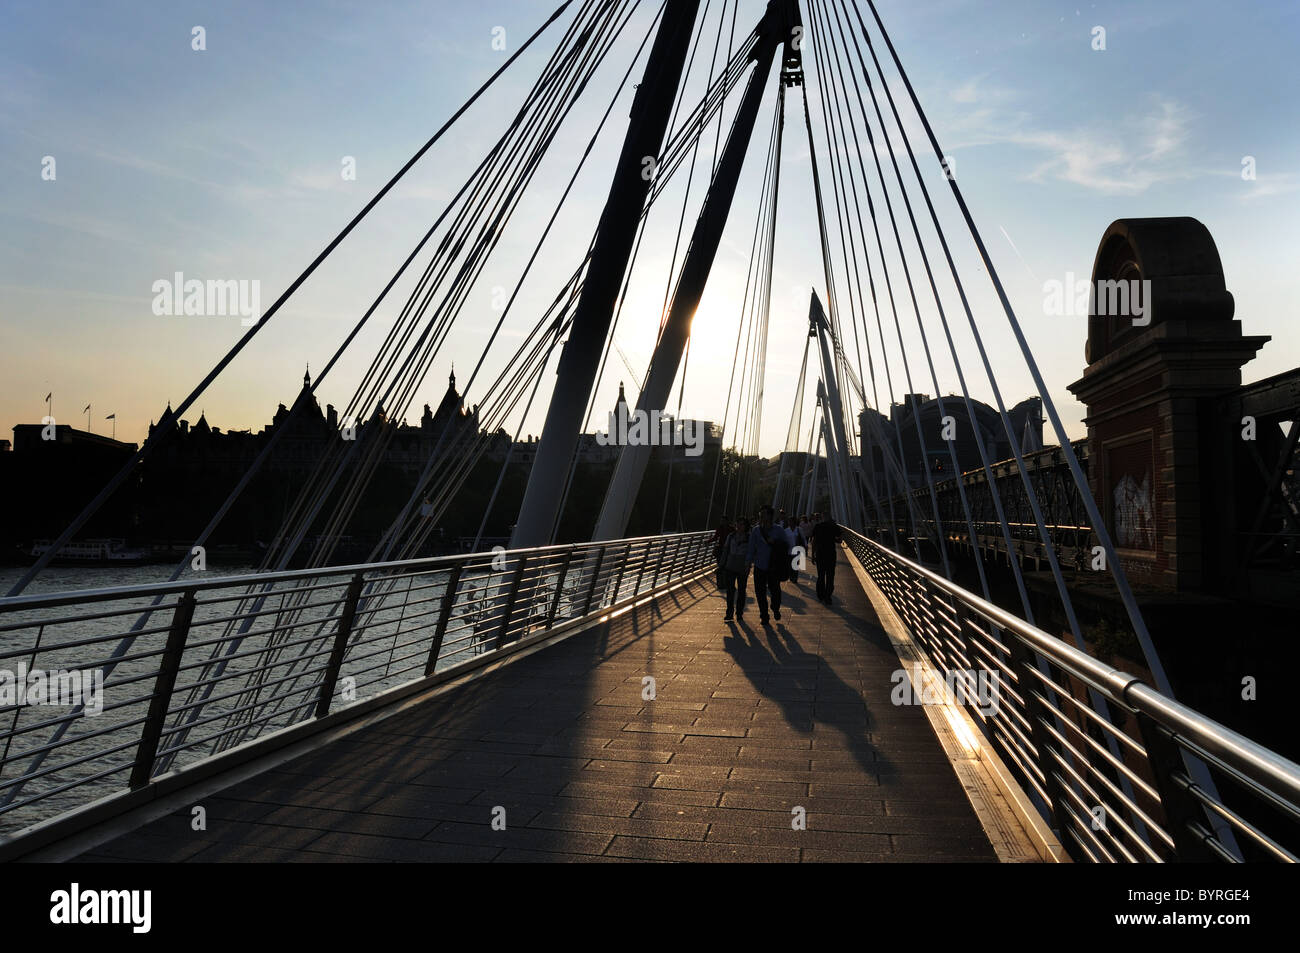 People on Golden Jubilee Bridge, London at sunset Stock Photo